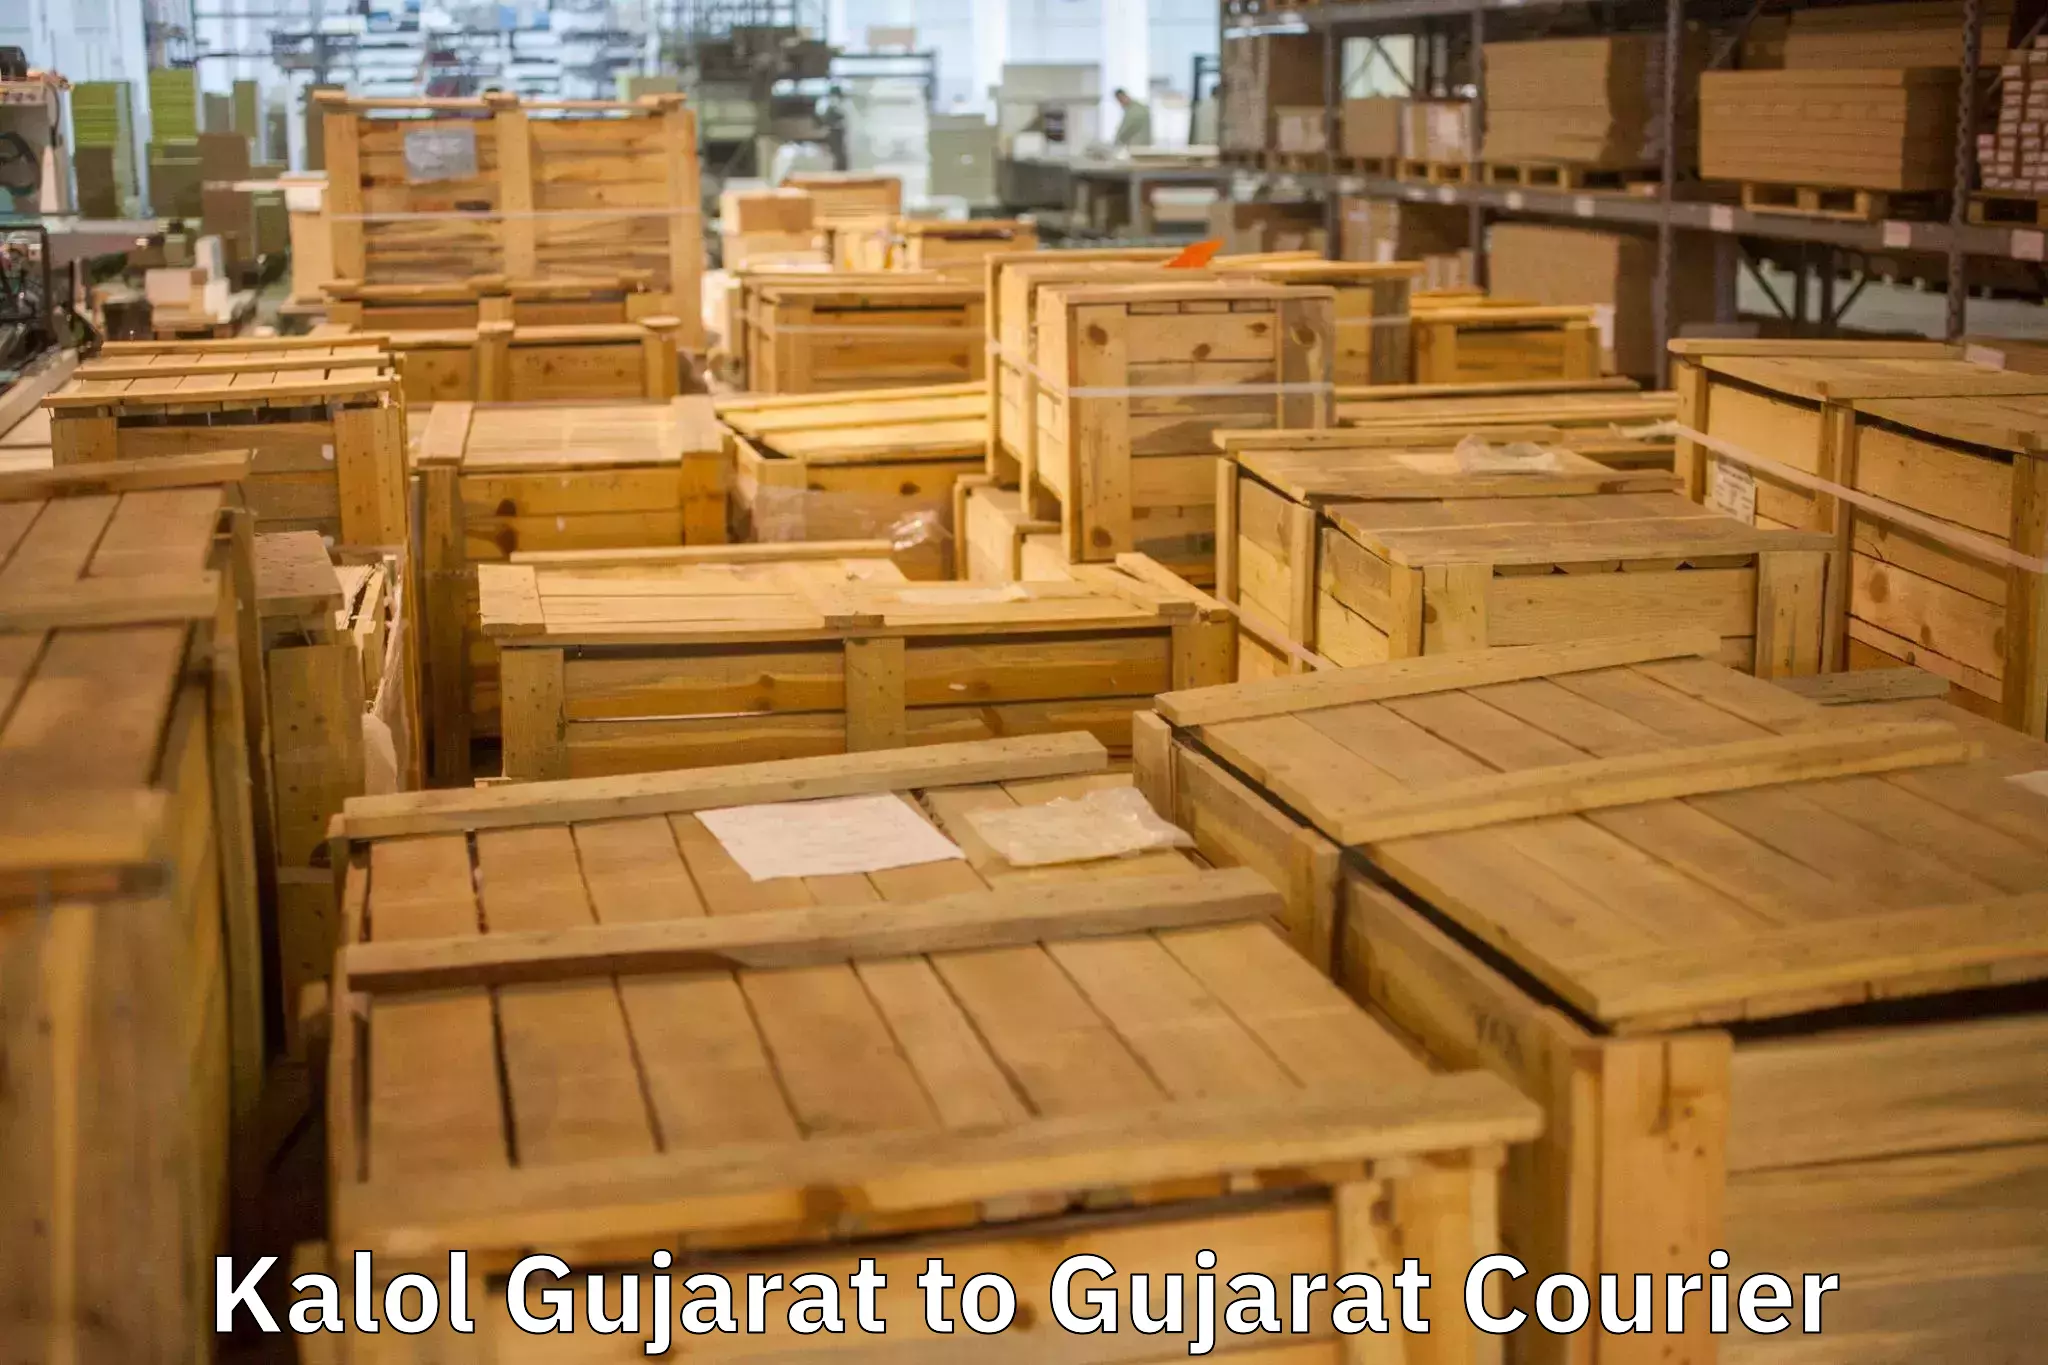 Full-service relocation in Kalol Gujarat to Vadnagar